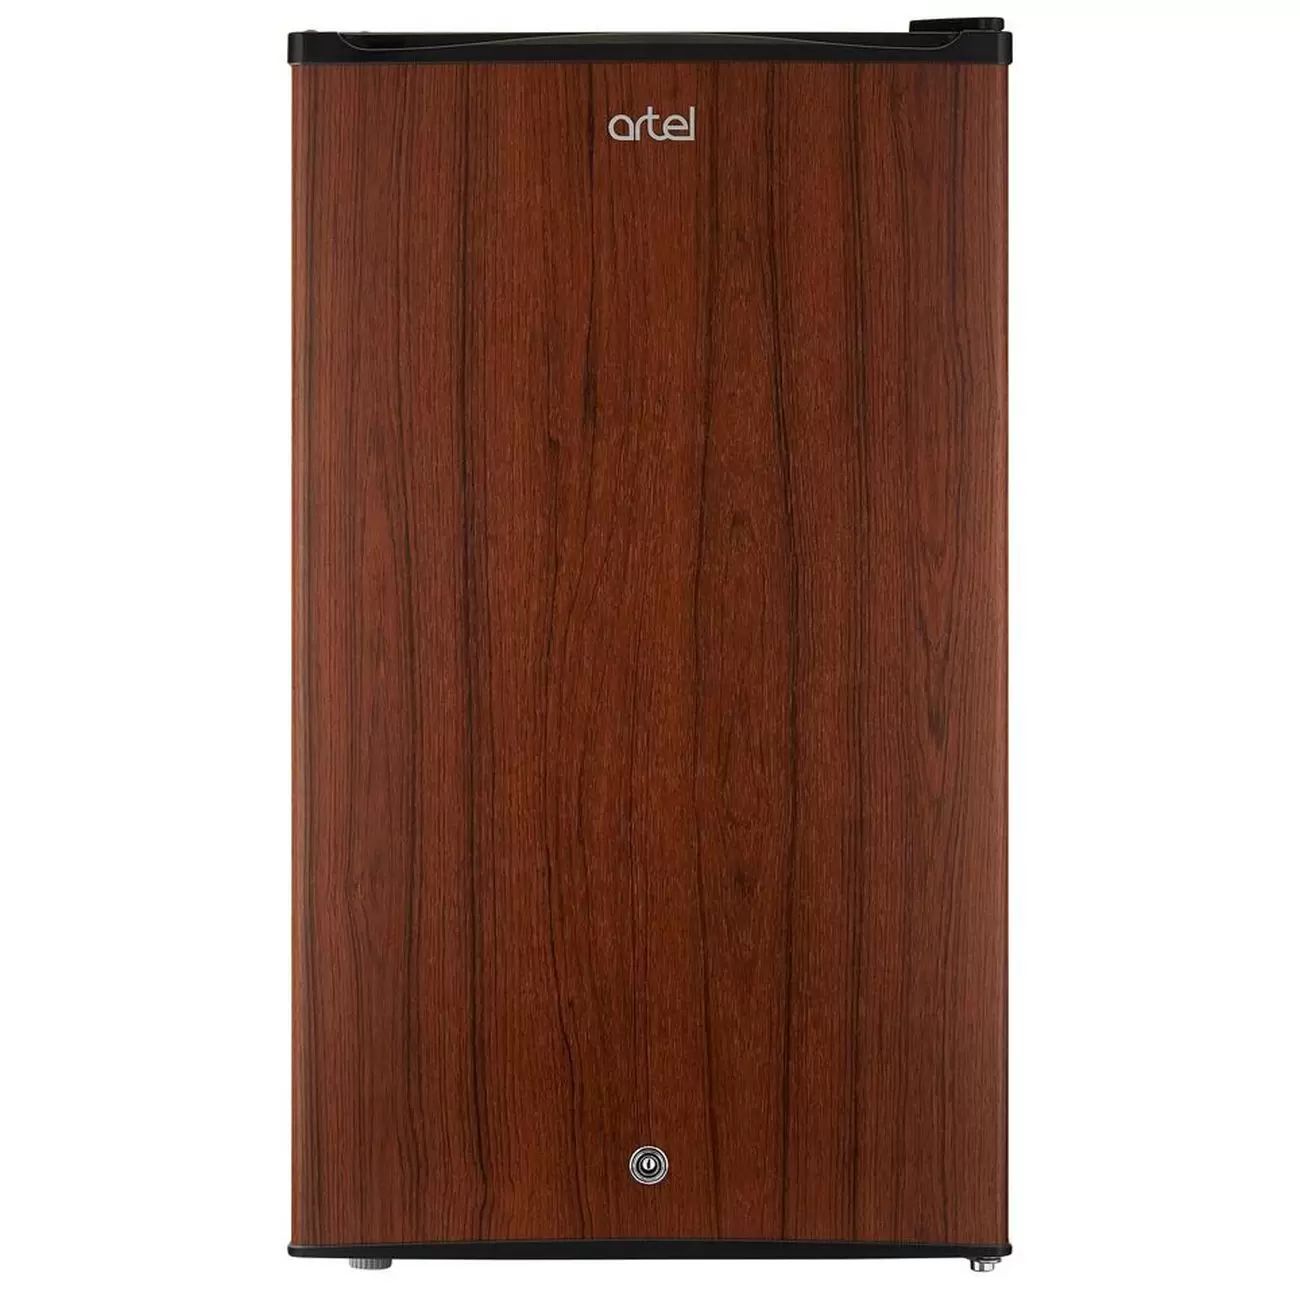 Холодильник Artel HS-117 RN коричневый холодильник tesler rc 55 коричневый